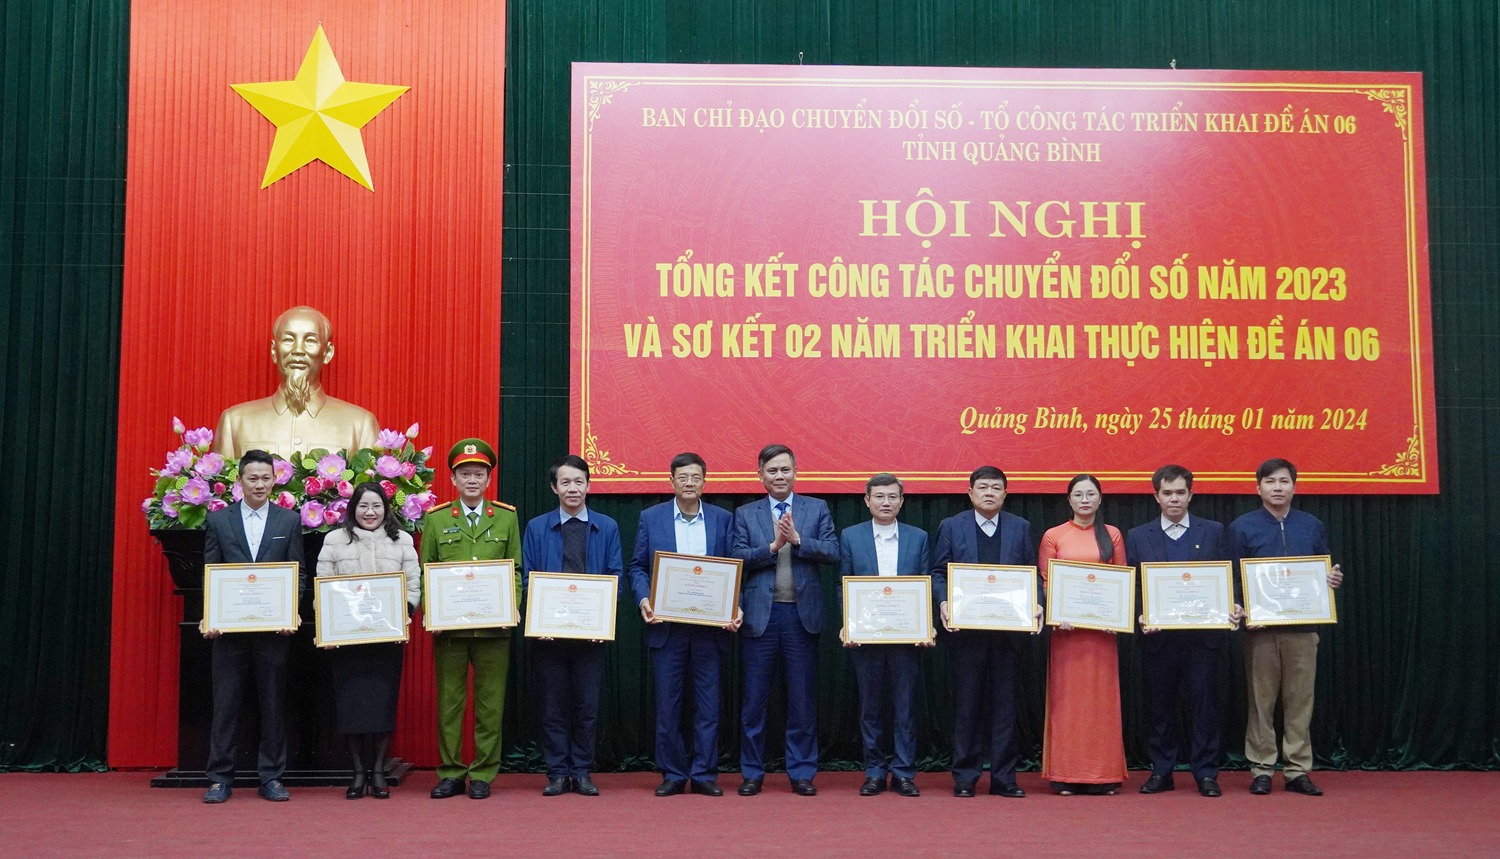 Đồng chí Chủ tịch UBND tỉnh Trần Thắng trao Bằng khen cho các tập thể và cá nhân có thành tích xuất sắc trong thực hiện CĐS năm 2023.